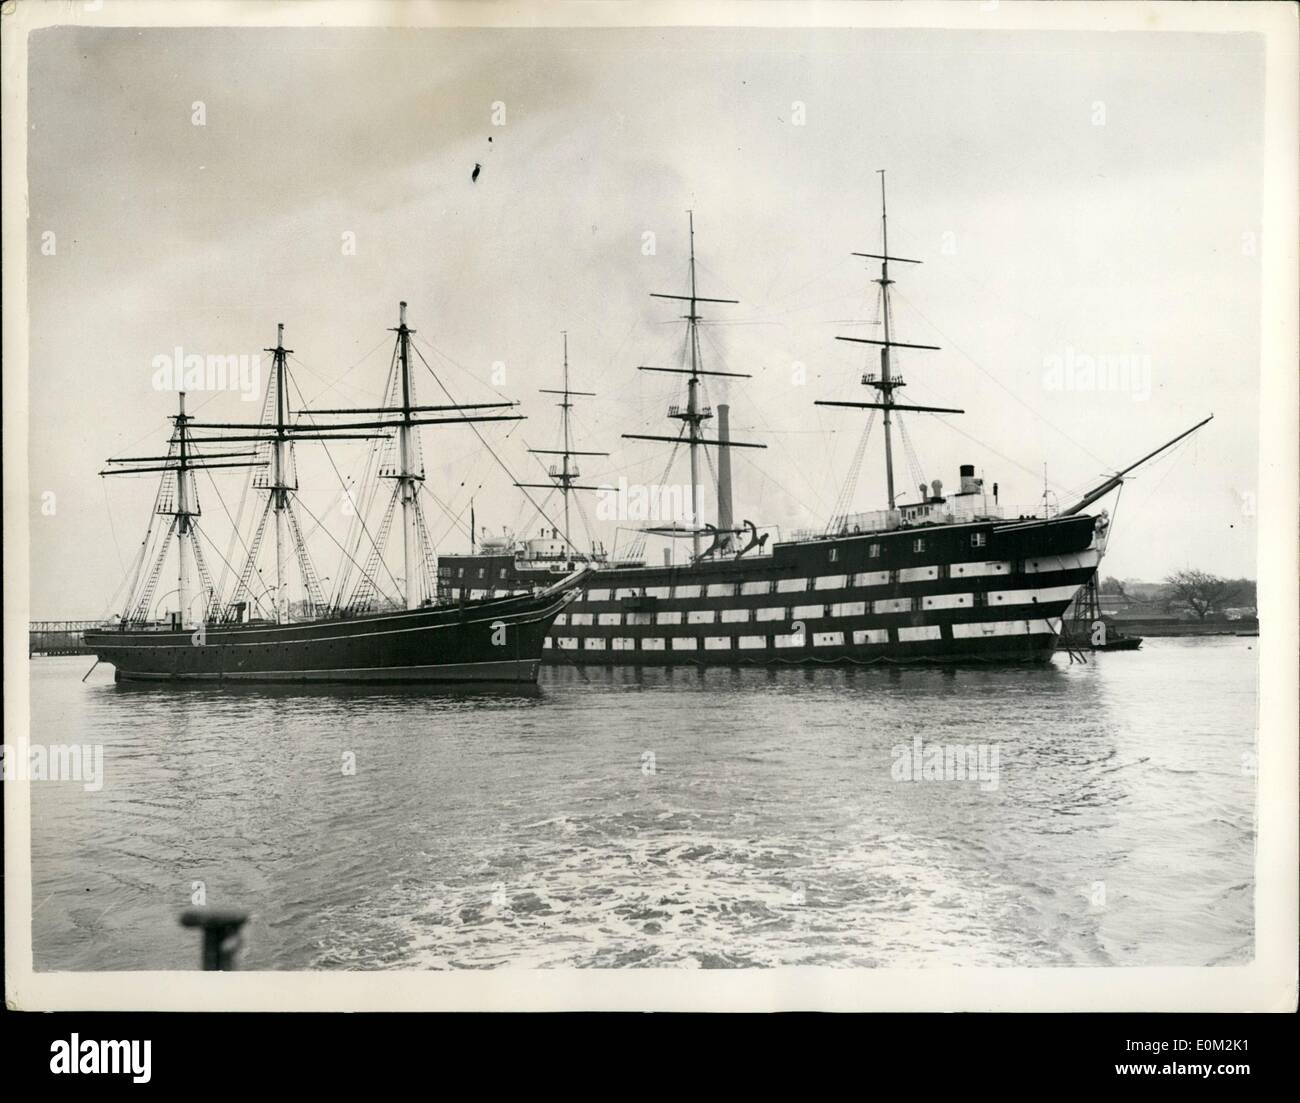 04. Apr. 1953 - Letzte Der Alten Teeschneider - In Greenhithe. Die ''Cutty Sark'' und die ''Worcester'': Die letzte der alten Tea Clippers - die ''Cutty Sark'' wird neben dem Trainingsschiff ''Worcester'' in Greenhithe vertäut - für das sie als Überlaufschiff eingesetzt wurde. Ein Appell wird von der Cutty Sark Preservation Society für geschätzte 250,000 gestartet, um die dauerhafte Erhaltung des Schiffes in Greenwich zu ermöglichen und eine Reihe von Cutty Sark Burseries zu etablieren, um jungen Männern die Ausbildung zu ermöglichen und sich als Offiziere der Handelsmarine zu qualifizieren Stockfoto